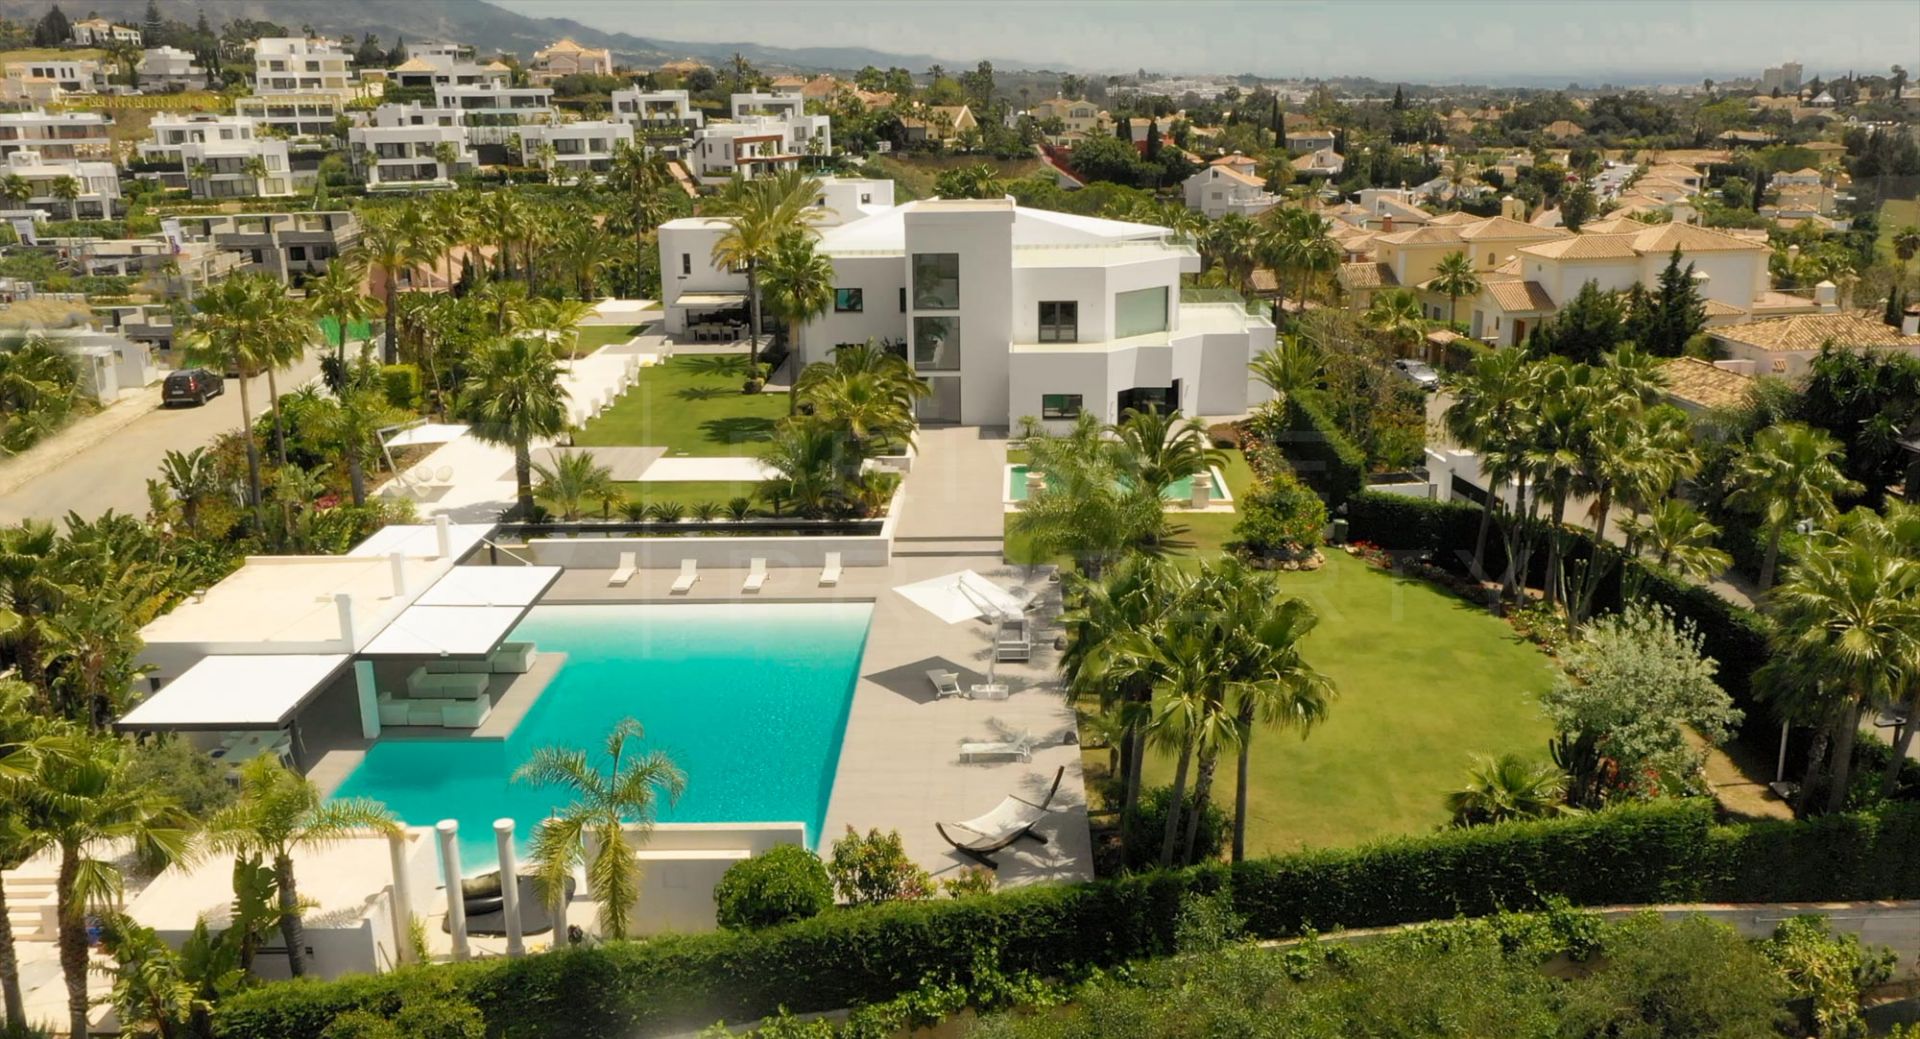 Contemporary home in Marbella